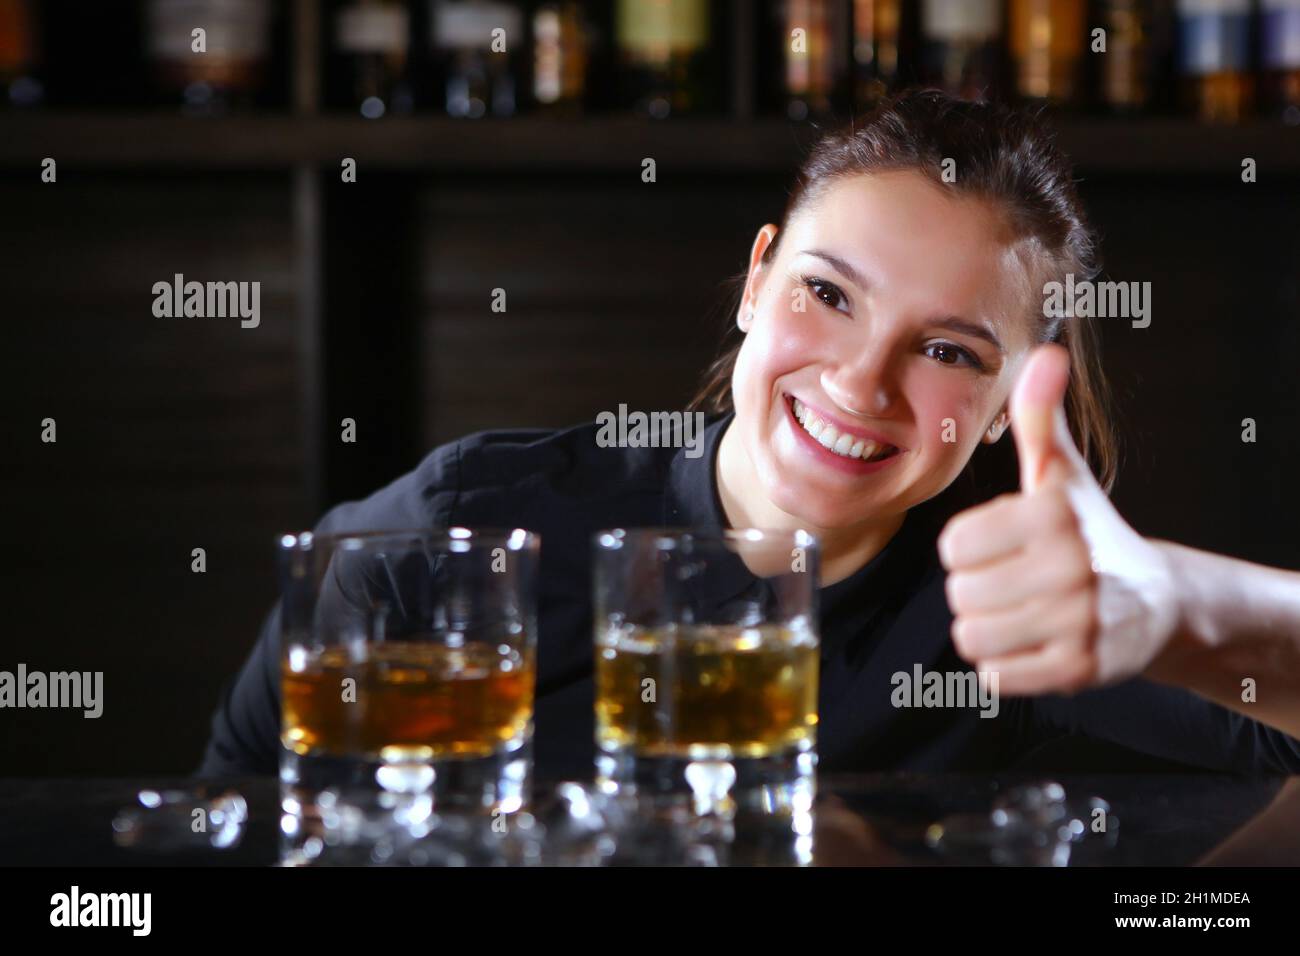 Das Barkeeper-Mädchen lächelt und hält ihren Daumen hoch. Foto im Inneren einer Bar in einem Restaurant. Foto auf schwarzem Hintergrund. Speicherplatz kopieren. Stockfoto